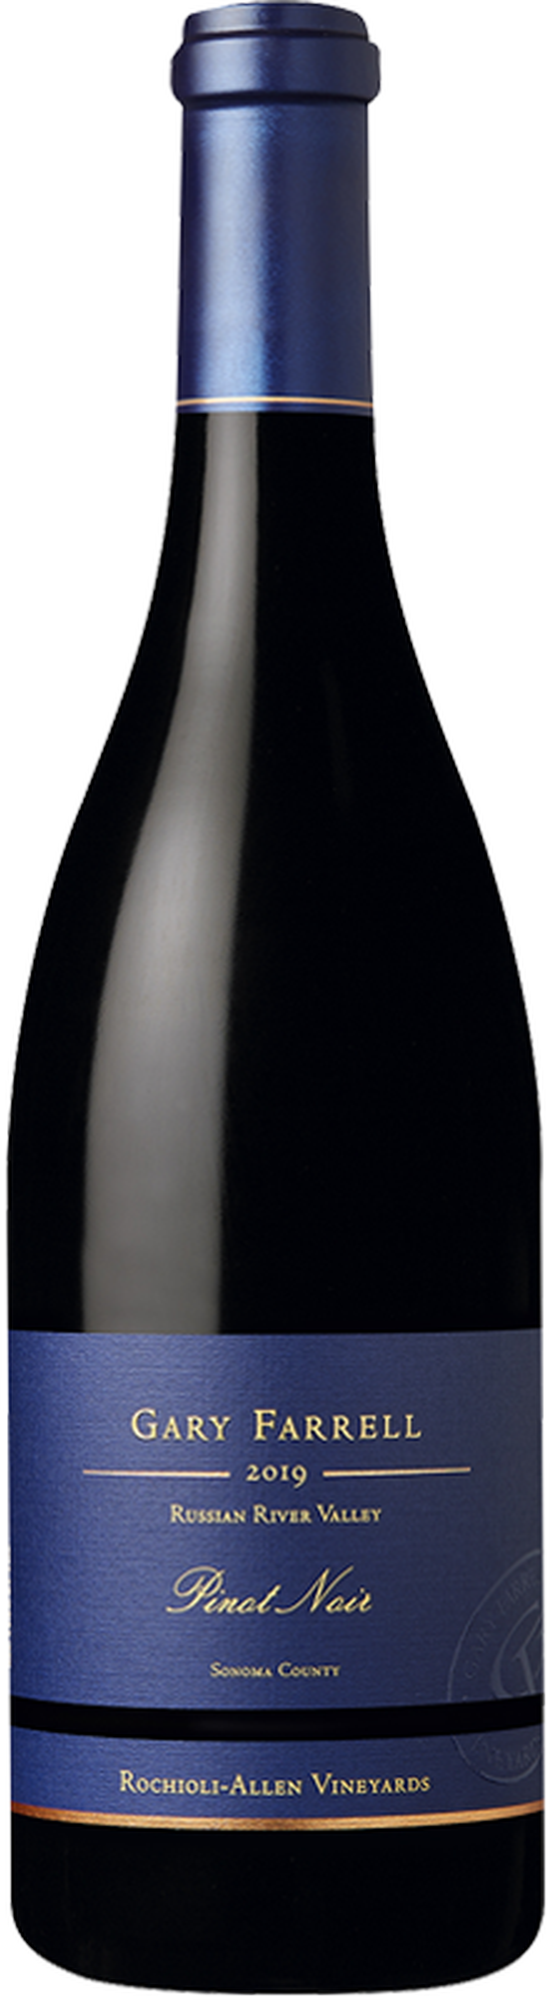 2019 Rochioli-Allen Vineyards Pinot Noir